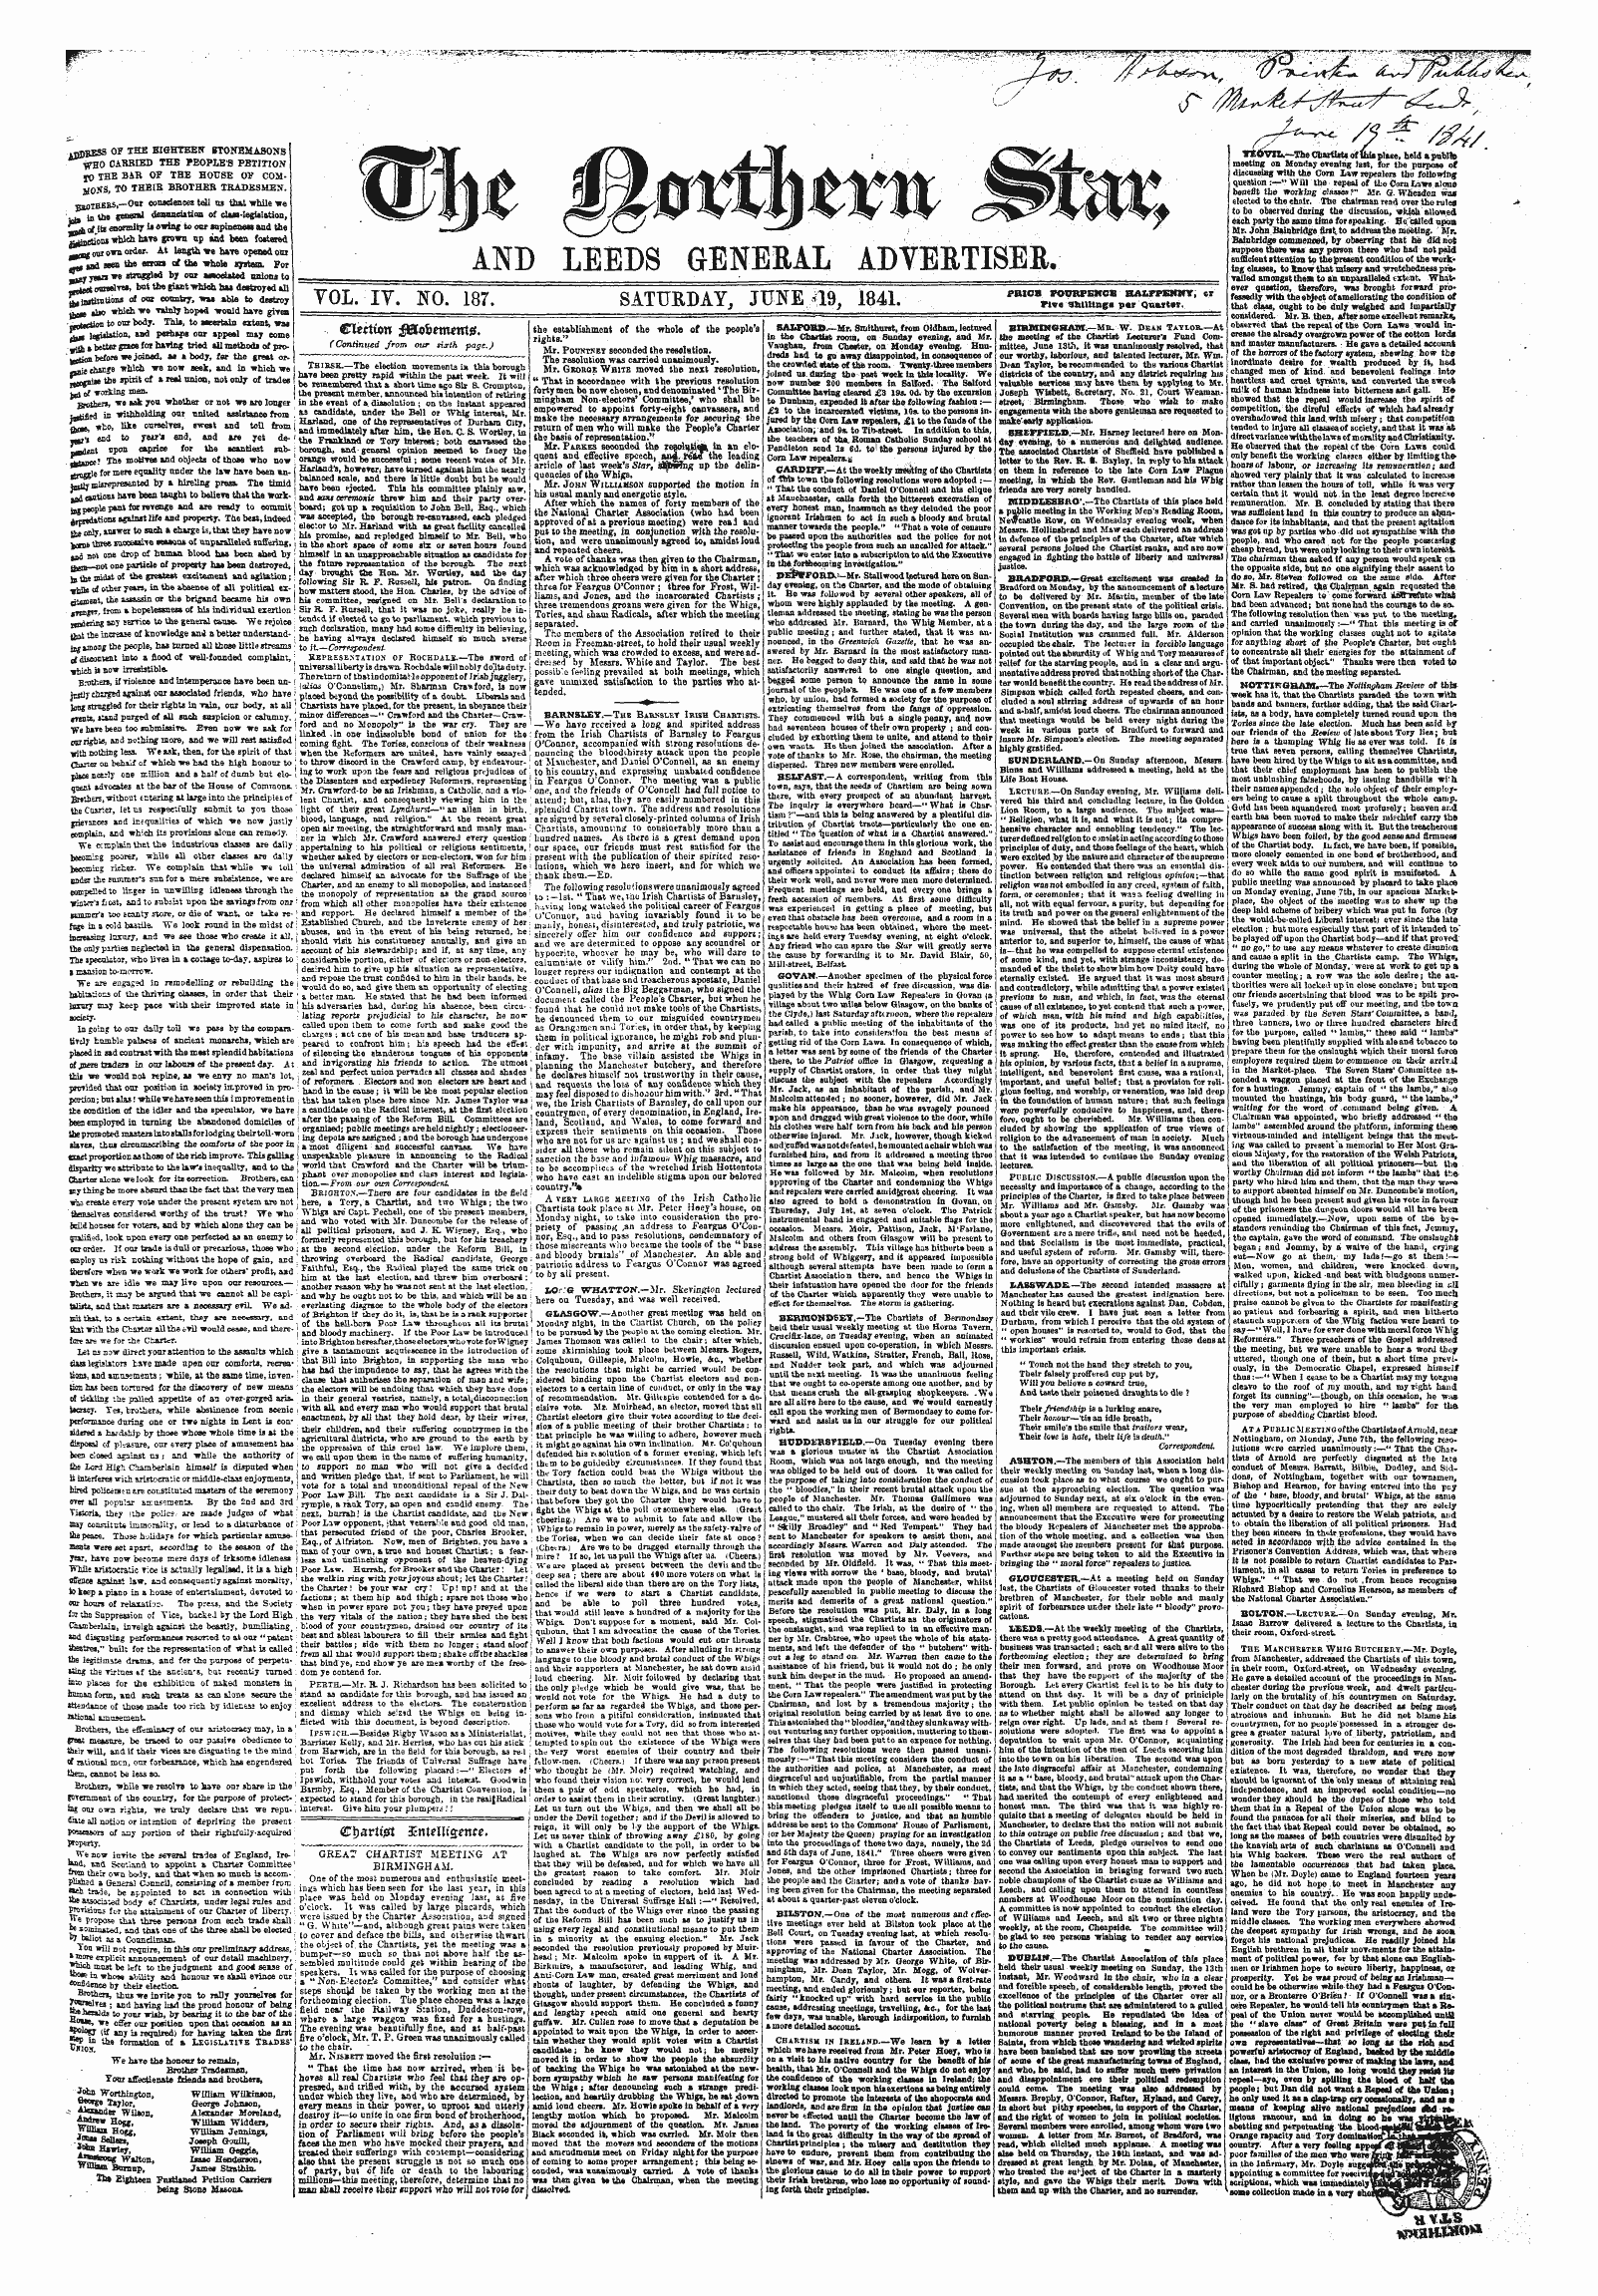 Northern Star (1837-1852): jS F Y, 3rd edition - Cparttgi Zaitelli&Ente